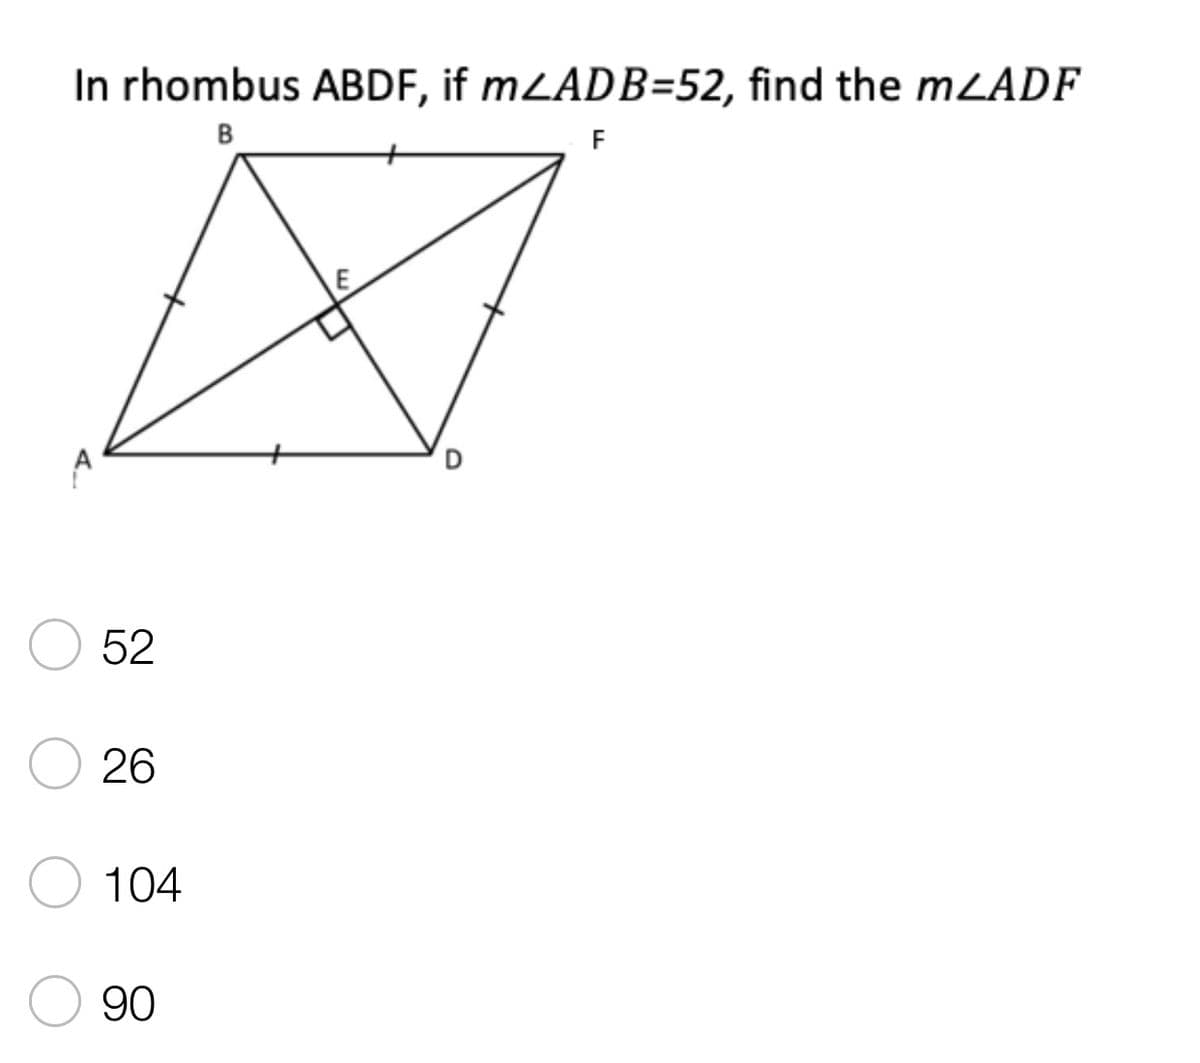 In rhombus ABDF, if mLADB=52, find the m/ADF
B
F
52
26
104
90